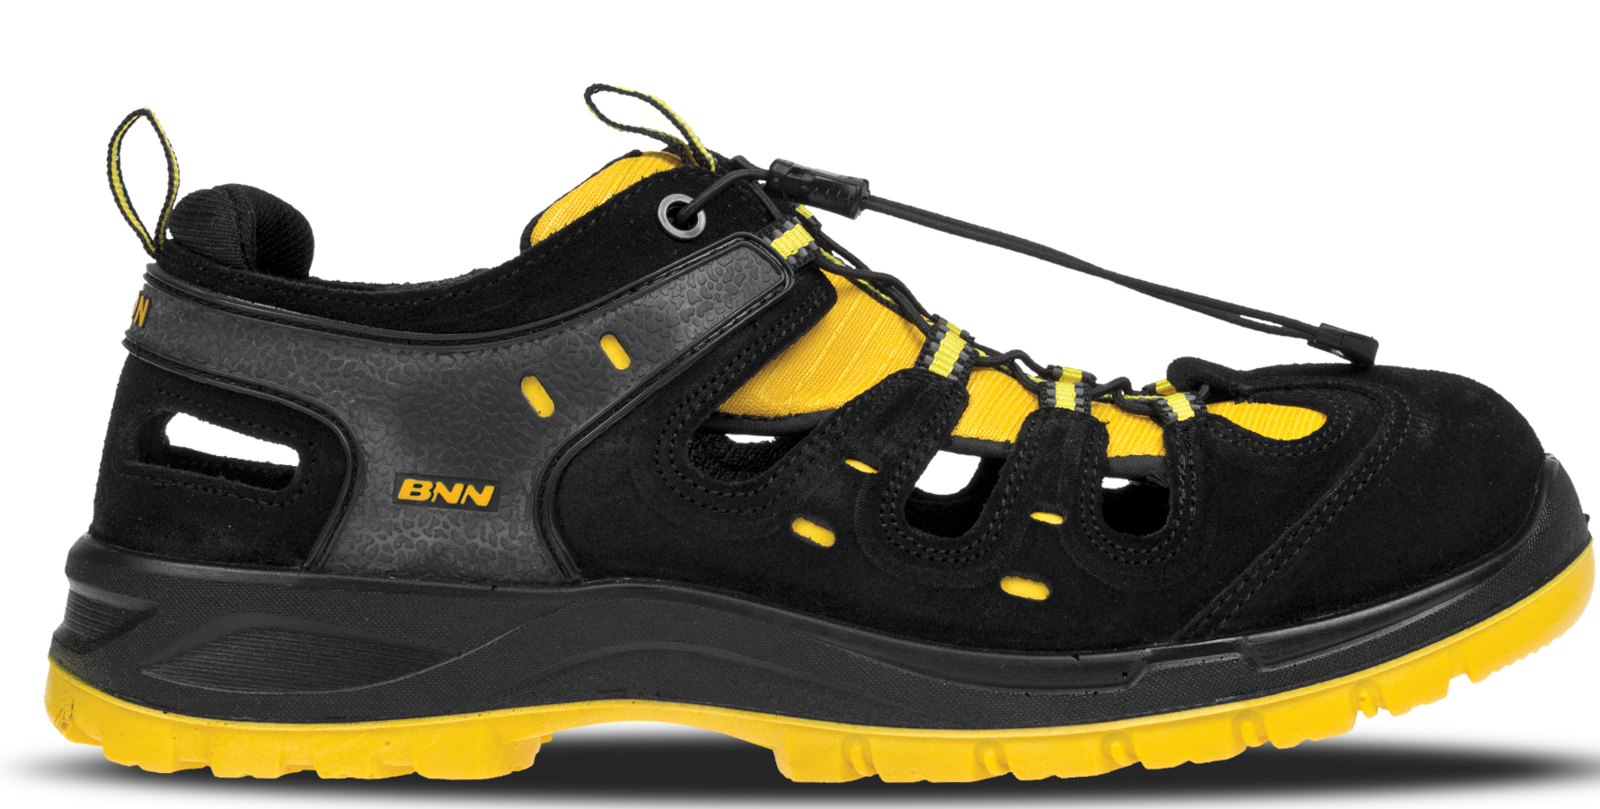 Bezpečnostné sandále Bombis lite NM S1 - veľkosť: 41, farba: žltá